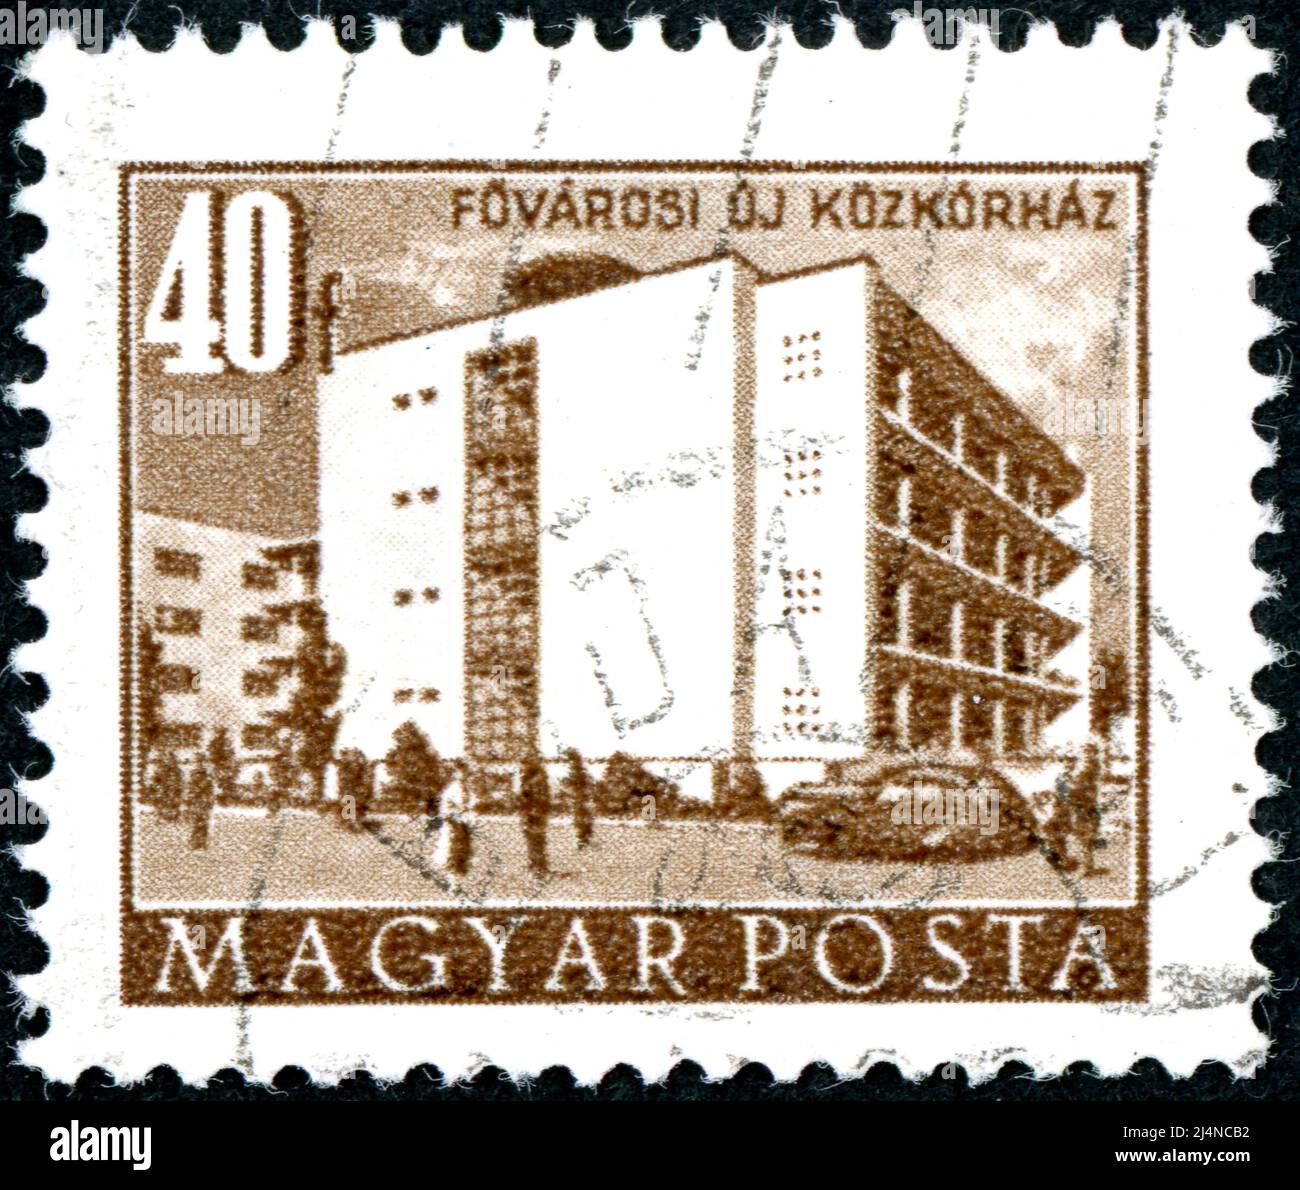 HONGRIE - VERS 1951: Timbre imprimé en Hongrie, montrant la gare centrale de Budapest, vers 1951 Banque D'Images